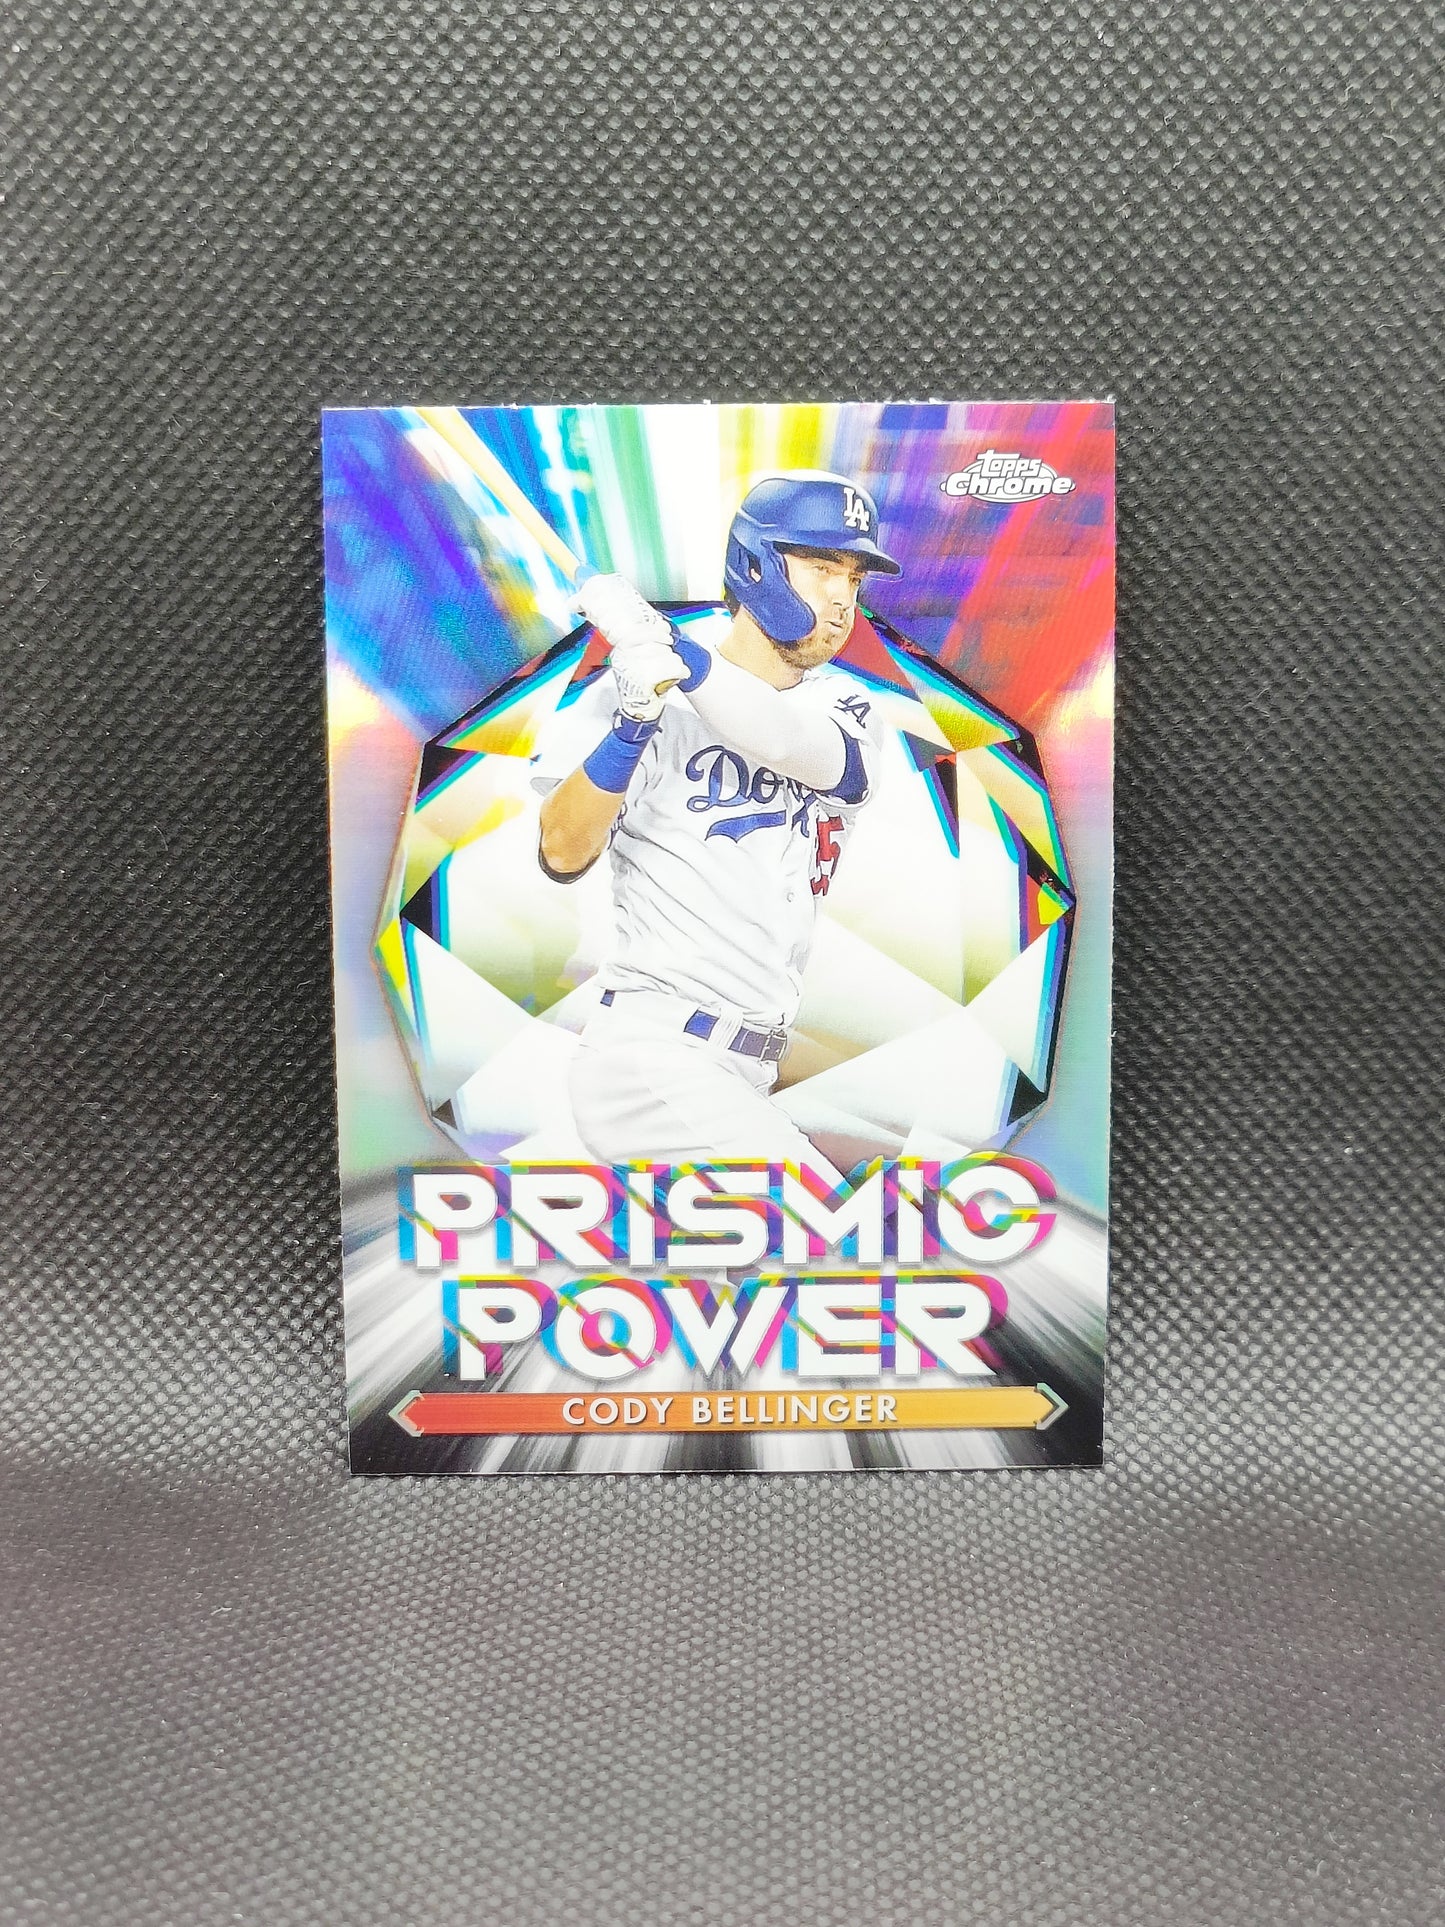 Cody Bellinger - 2021 Topps Chrome Prismic Power Insert - LA Dodgers